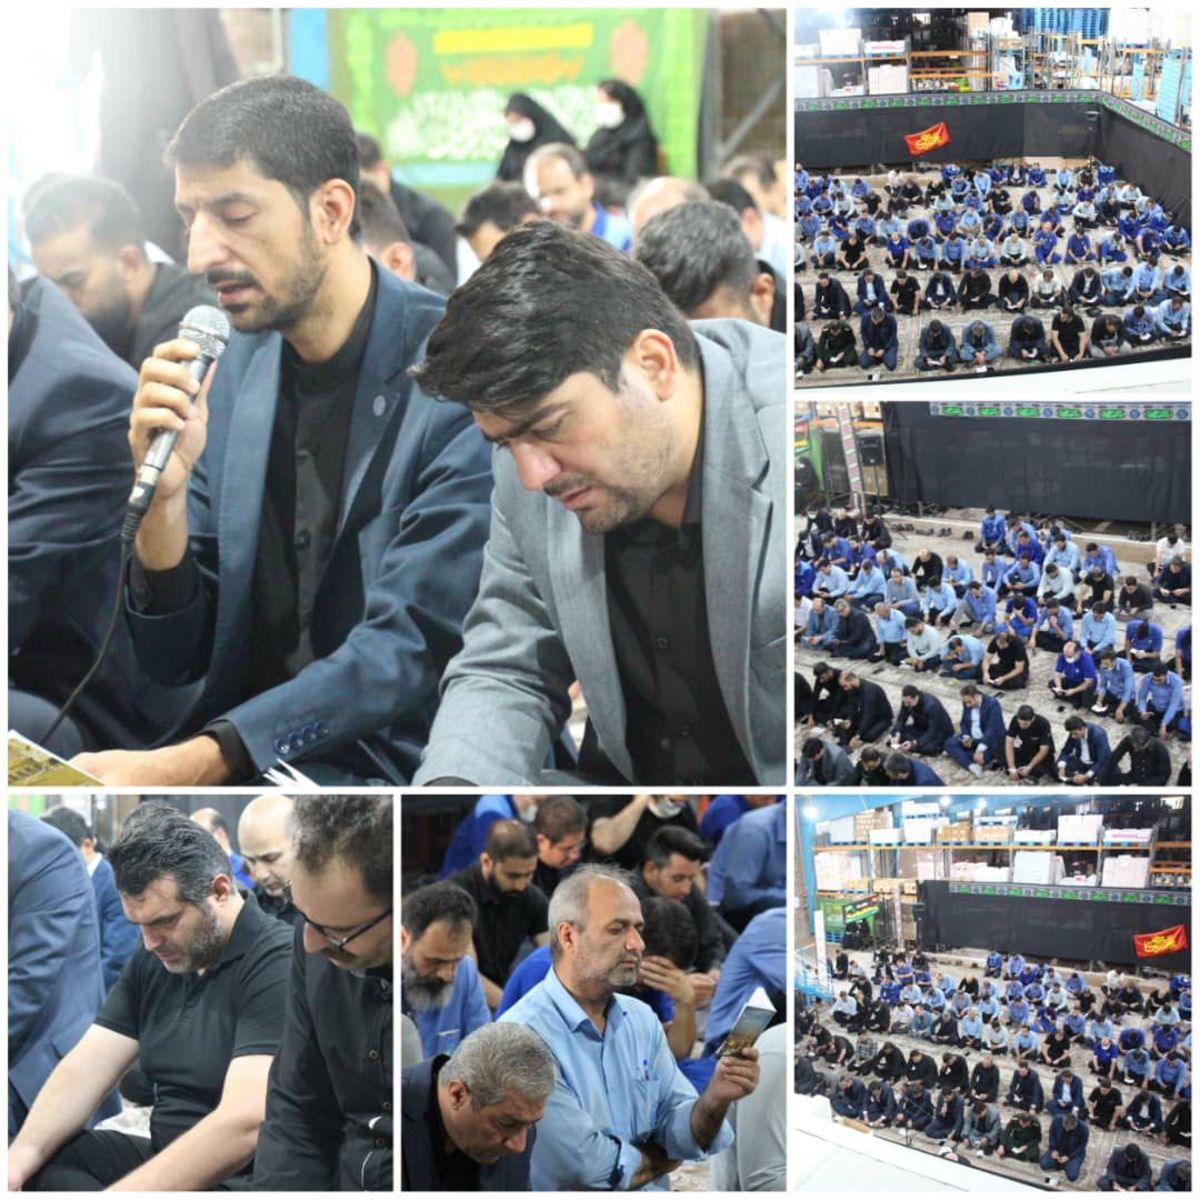 برگزاری مراسم پرفیض و معنوی زیارت عاشورا و عزاداري در انبار مرکز تهران یک